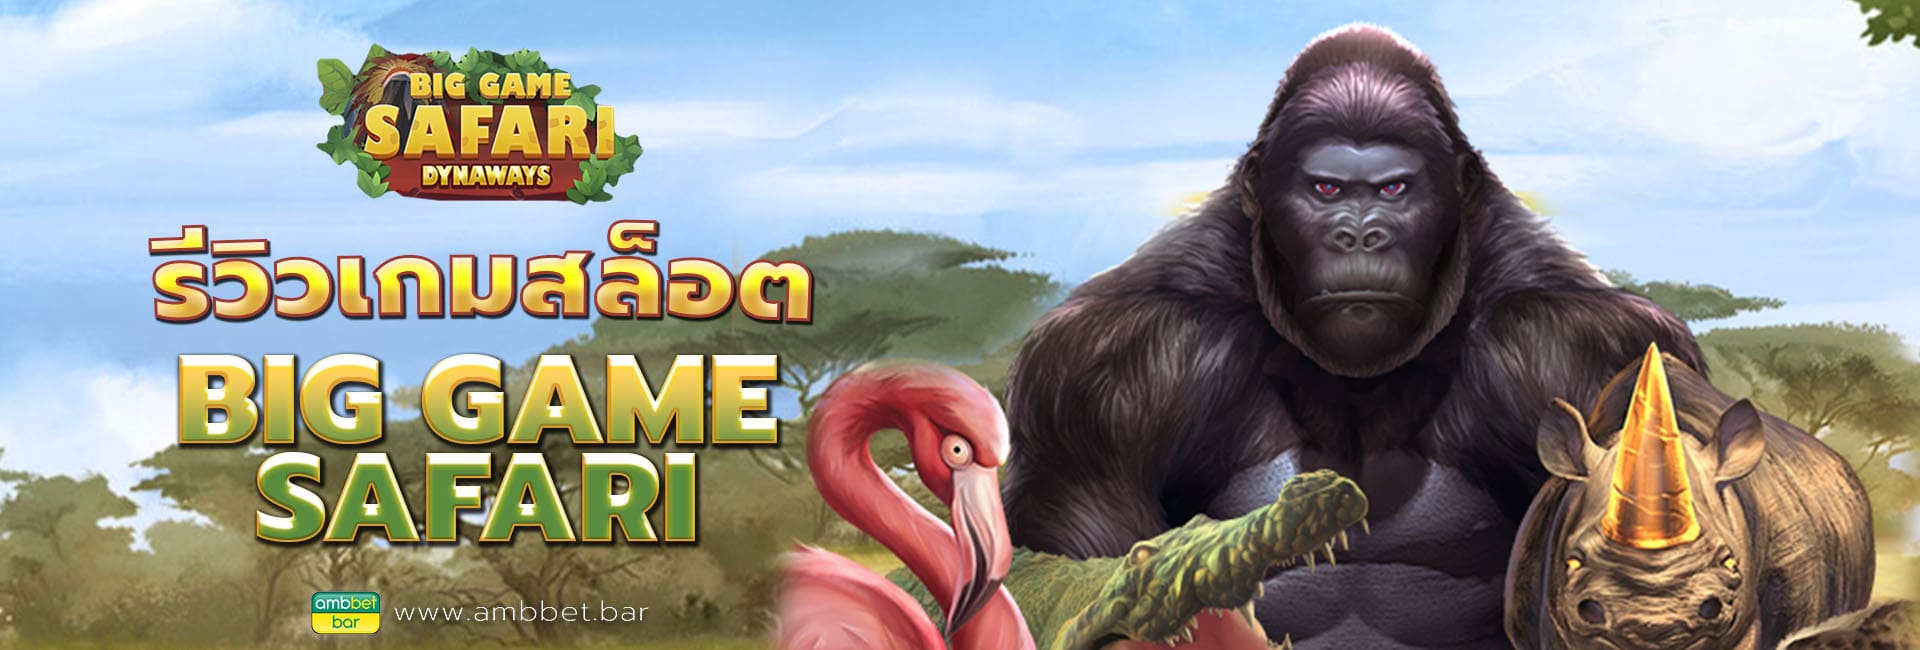 Big Game Safari banner